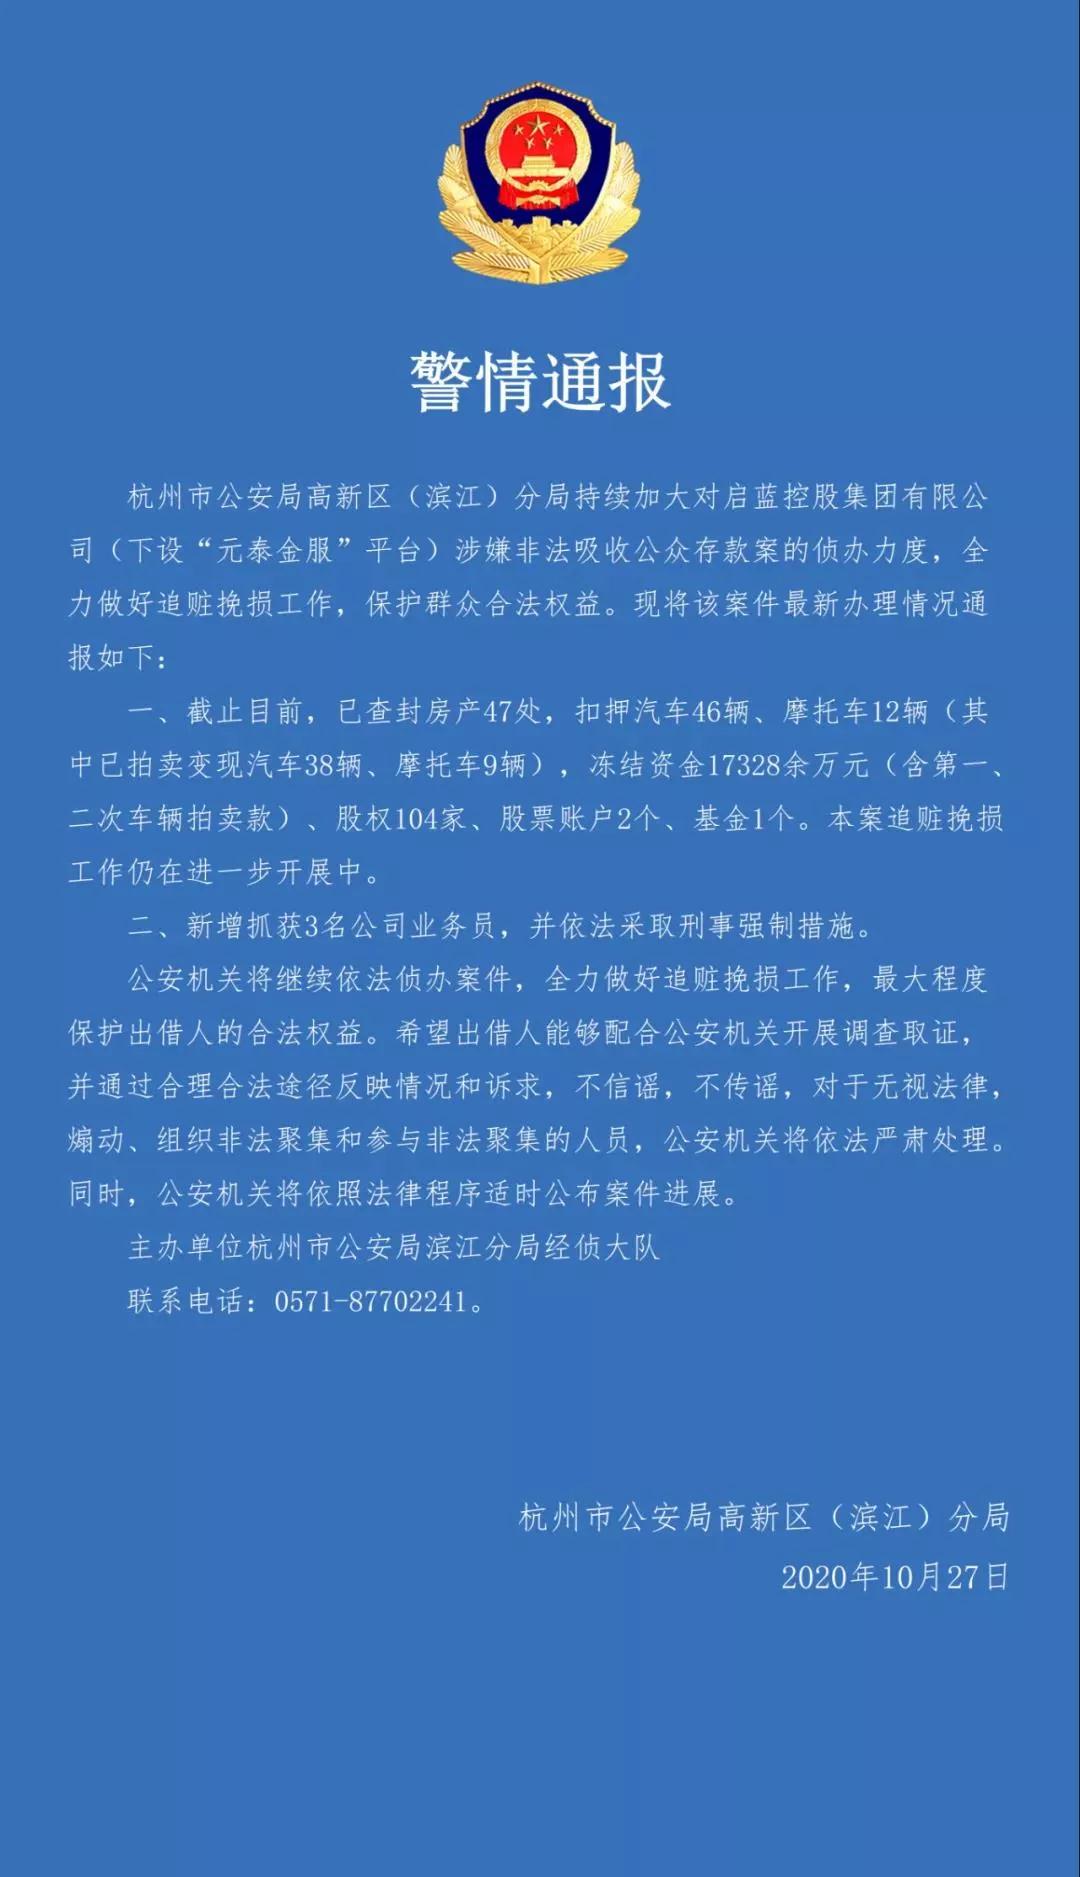 杭州P2P元泰金服有新进展：新增抓获3人 冻结资金1.7亿元